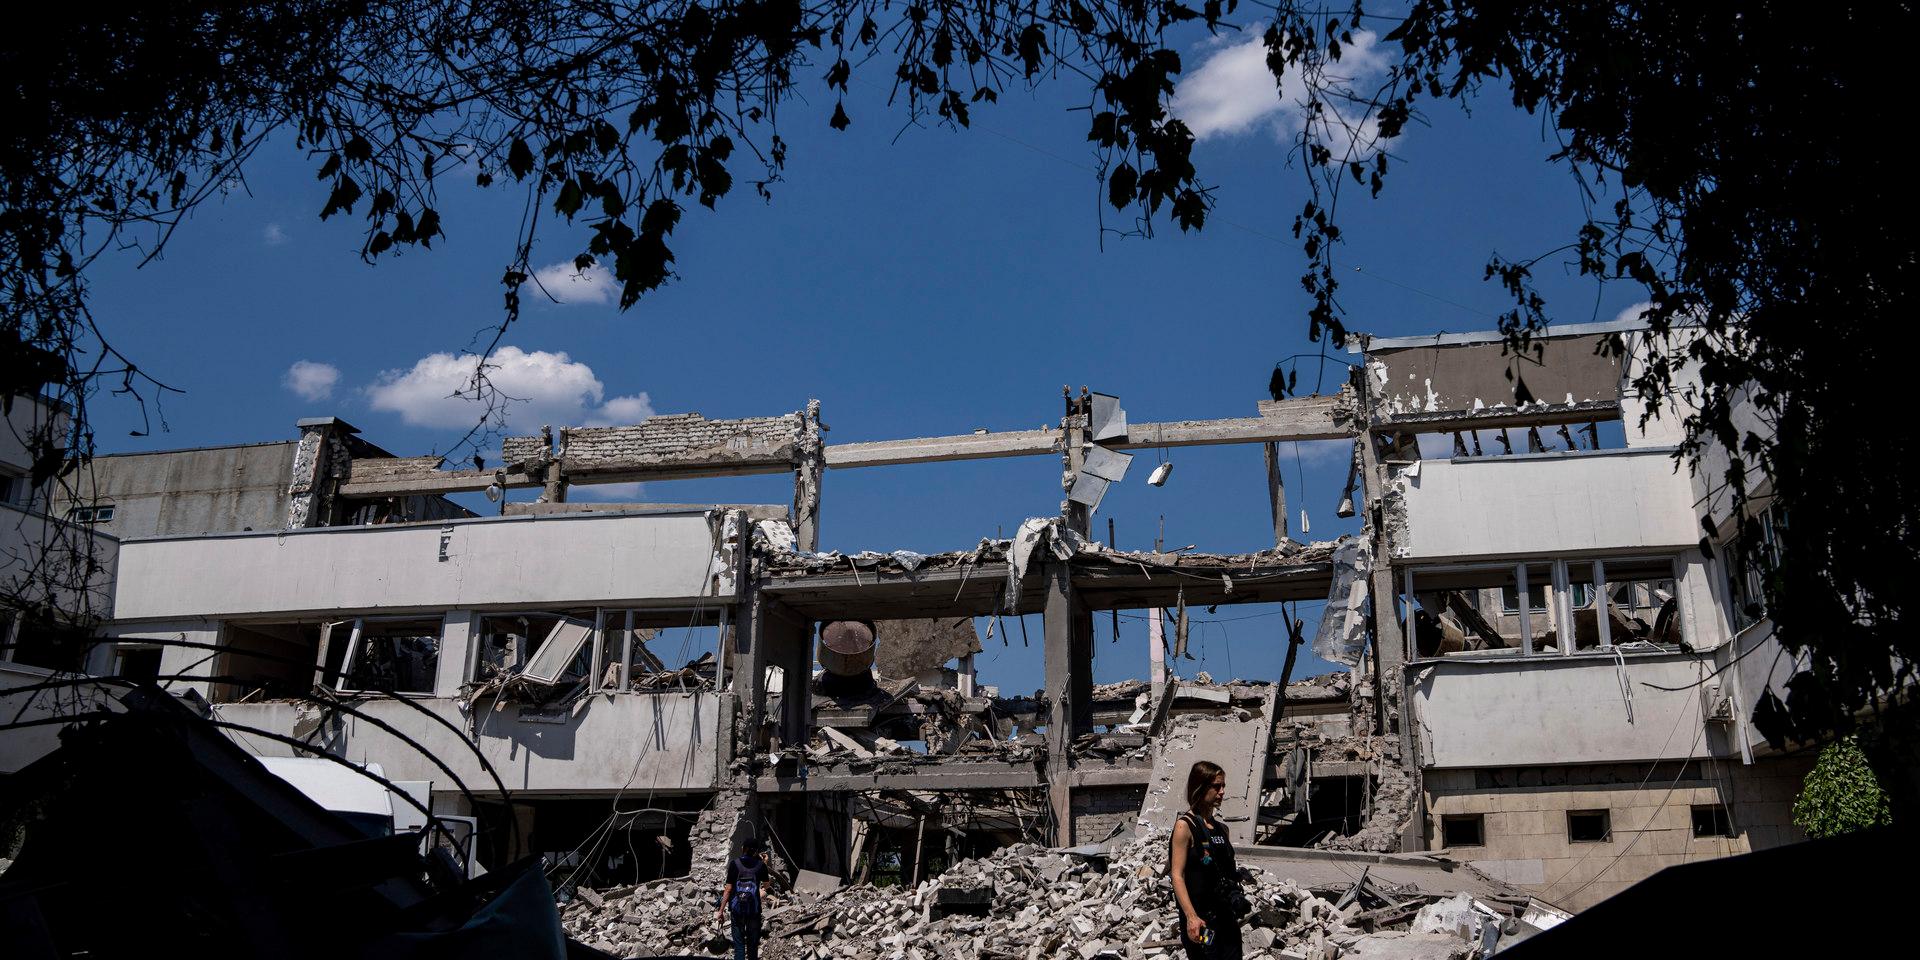 Ett universitet i Charkiv har förstörts i ett ryskt robotangrepp, enligt Ukrainas president Volodymyr Zelenskyj.